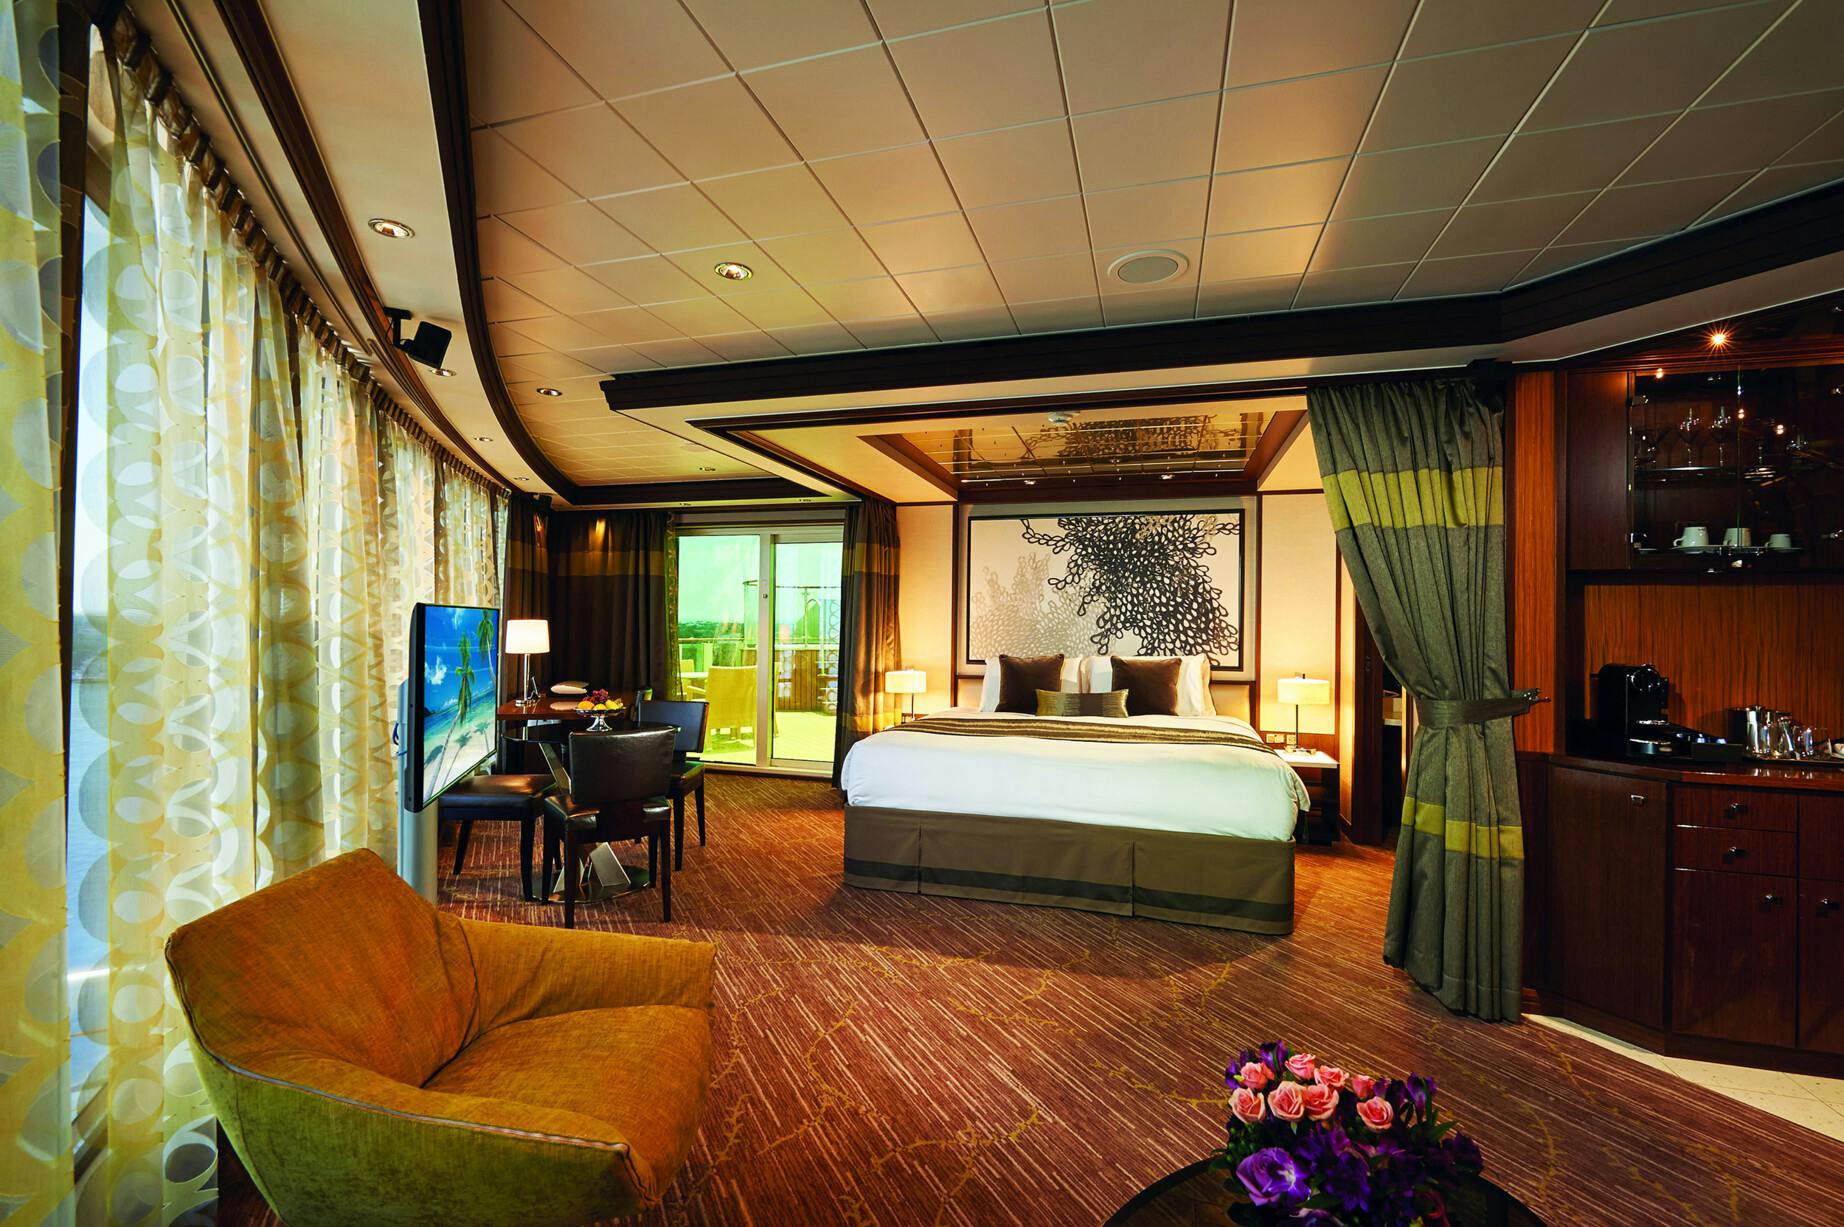 Norwegian Jade - Norwegian Cruise Line - The Haven Deluxe Owner's Suite mit großem Balkon